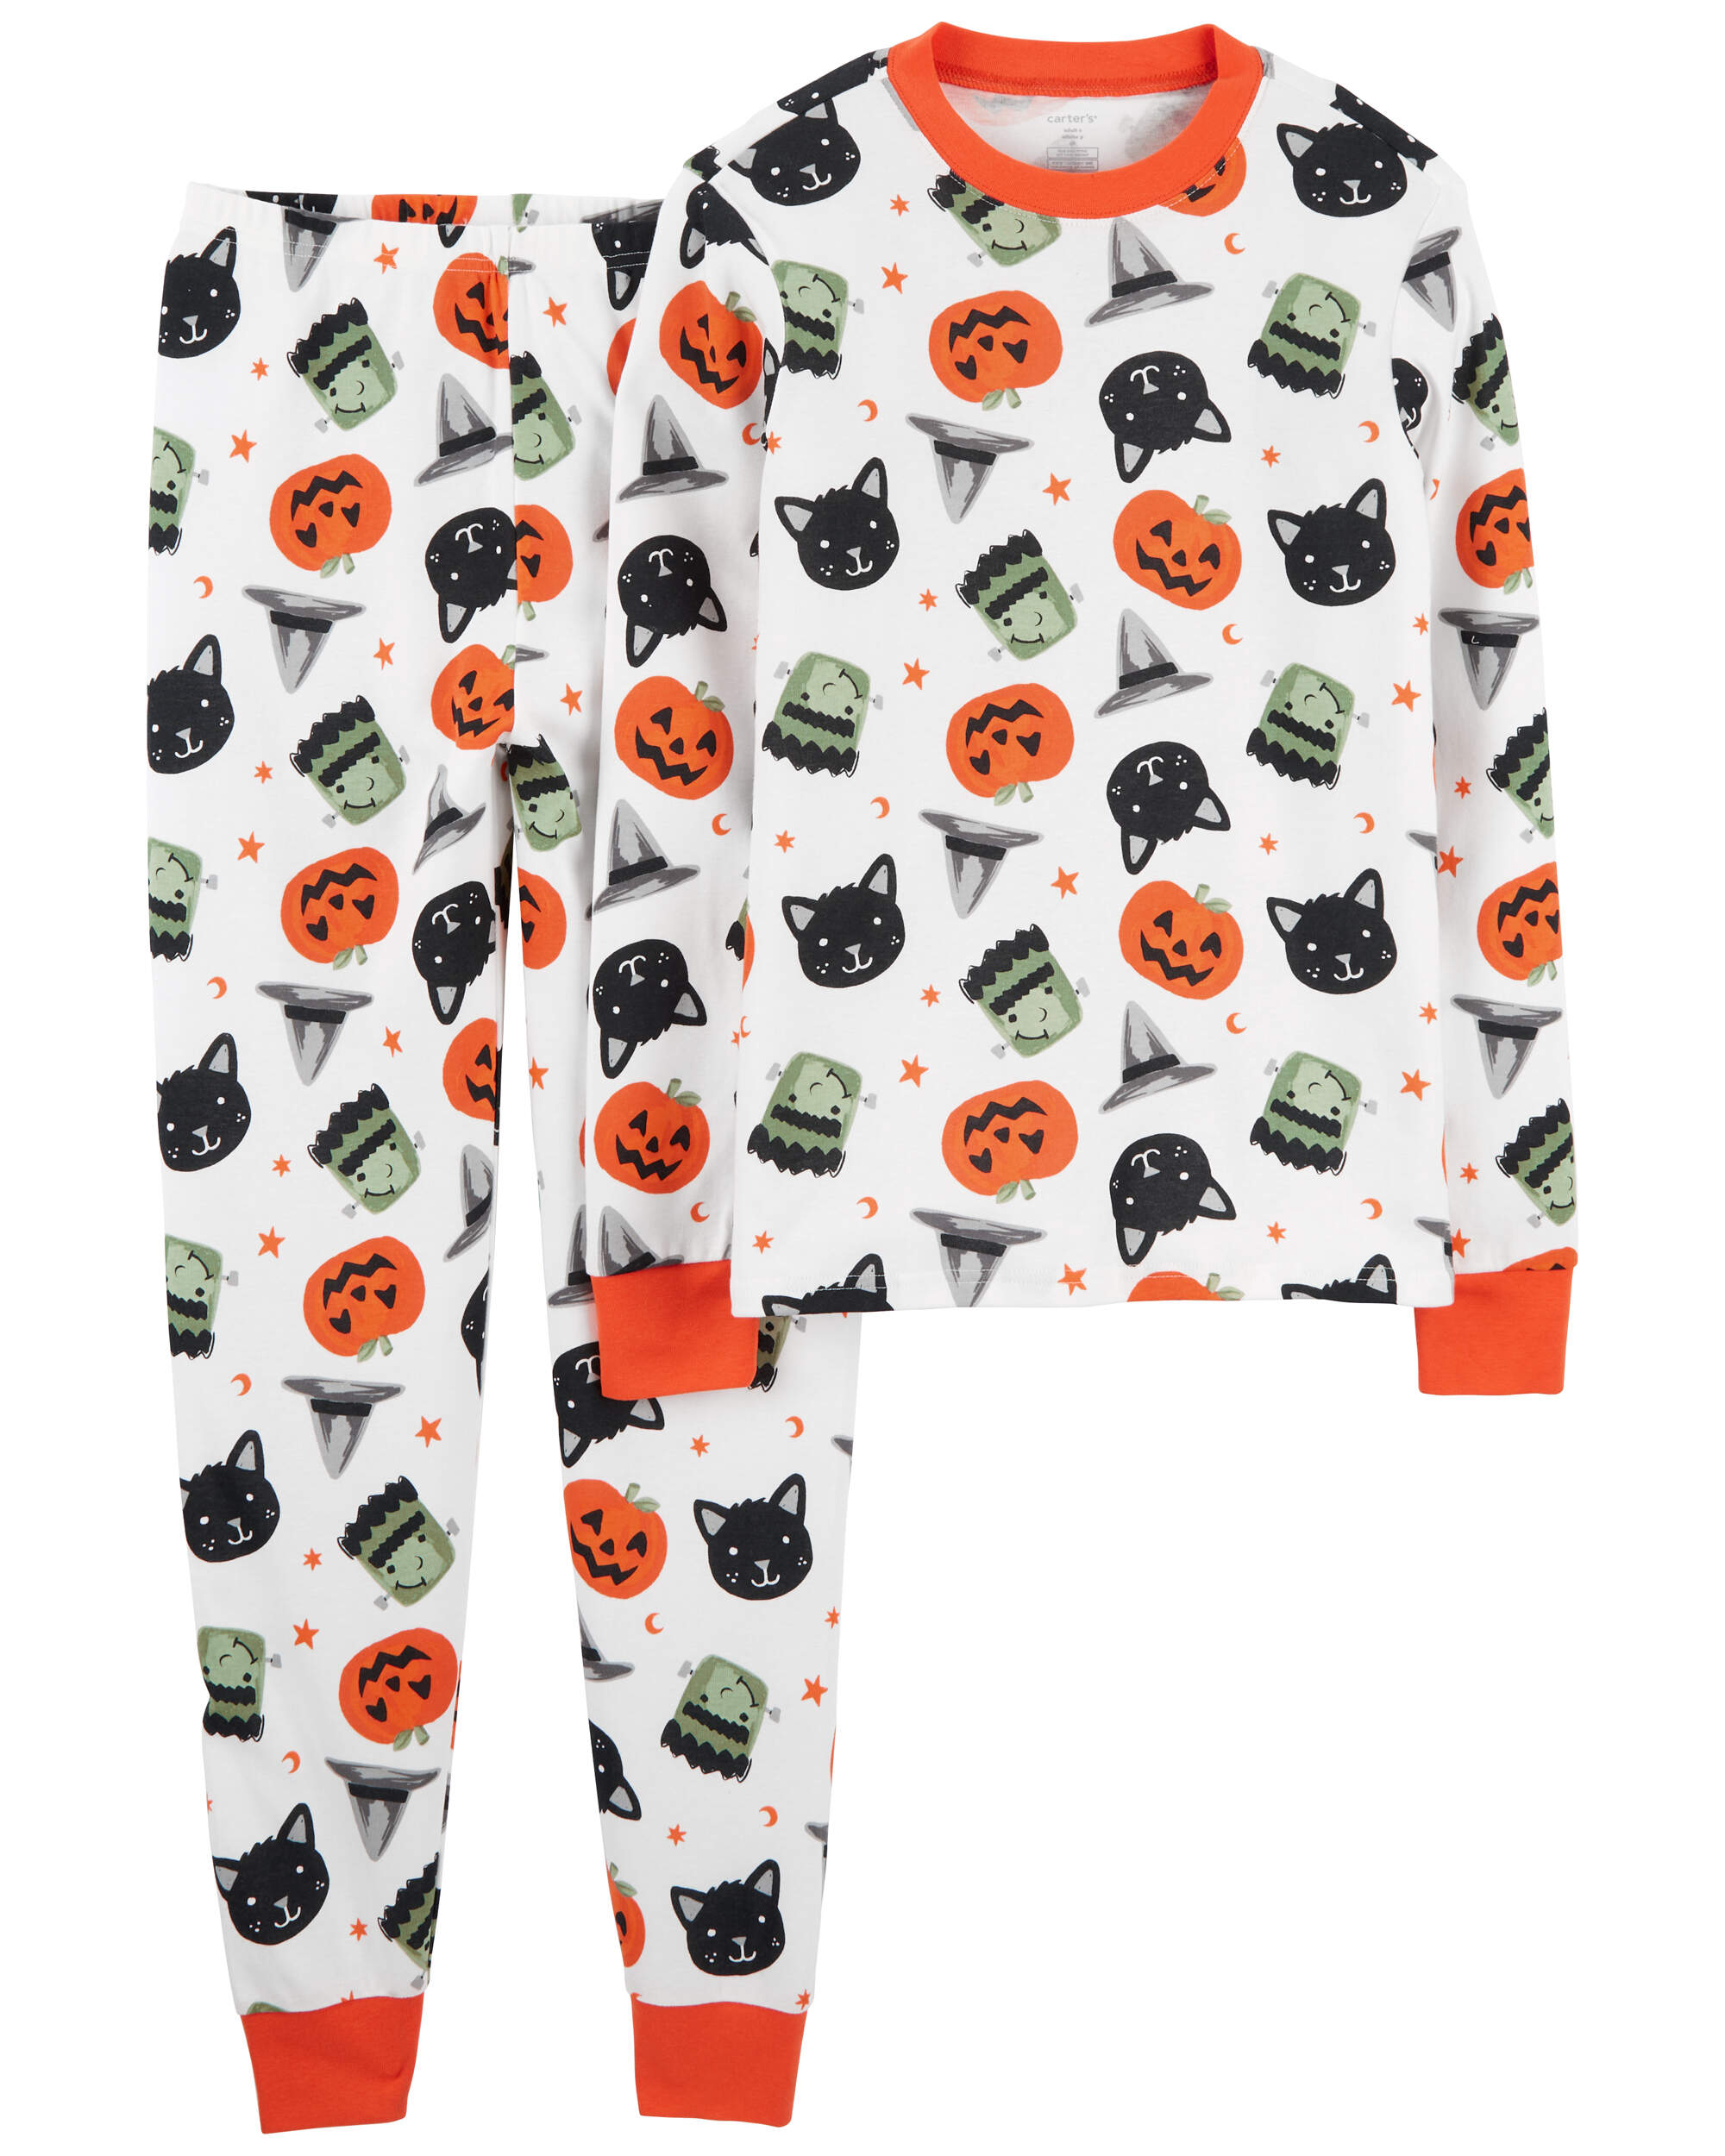 Adult 2-Piece Halloween 100% Snug Fit Cotton Pyjamas